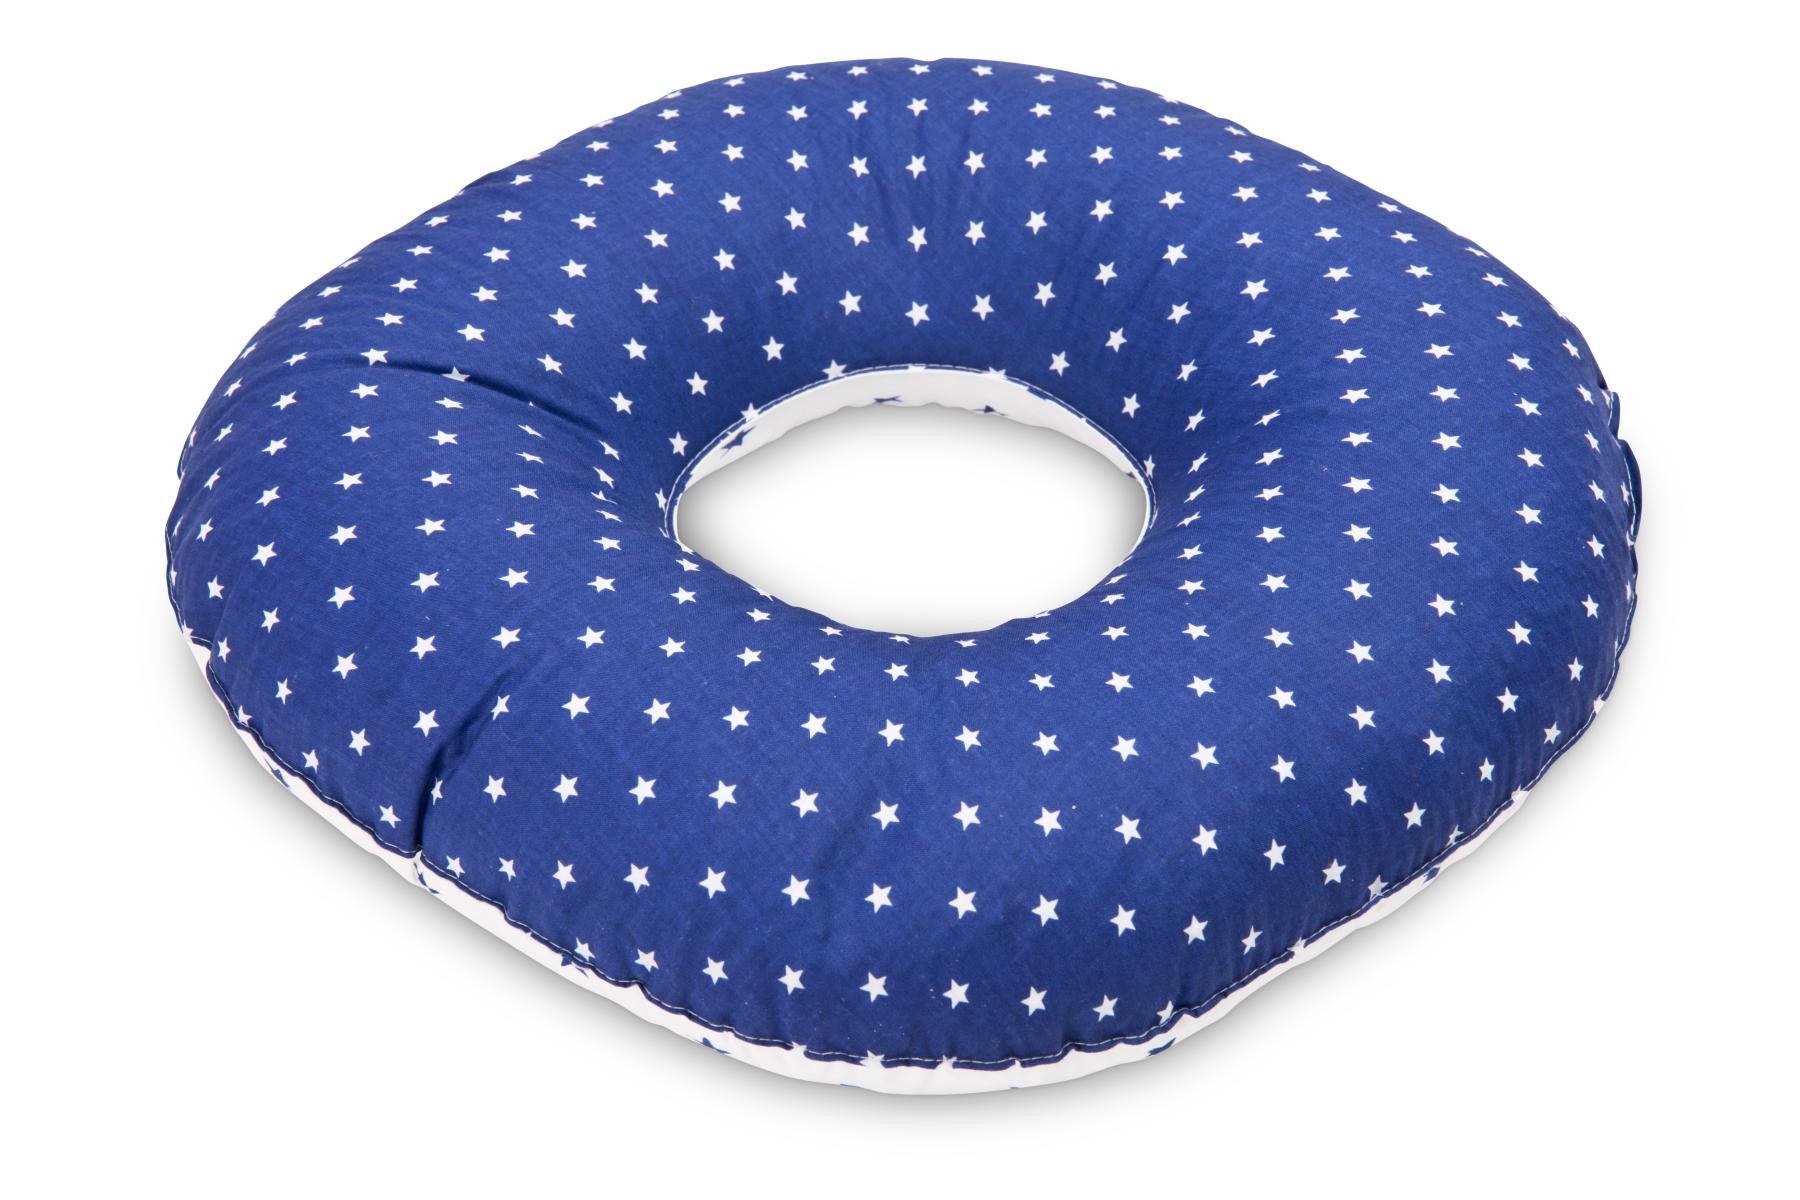 Postnatal Pillow – stars navy blue